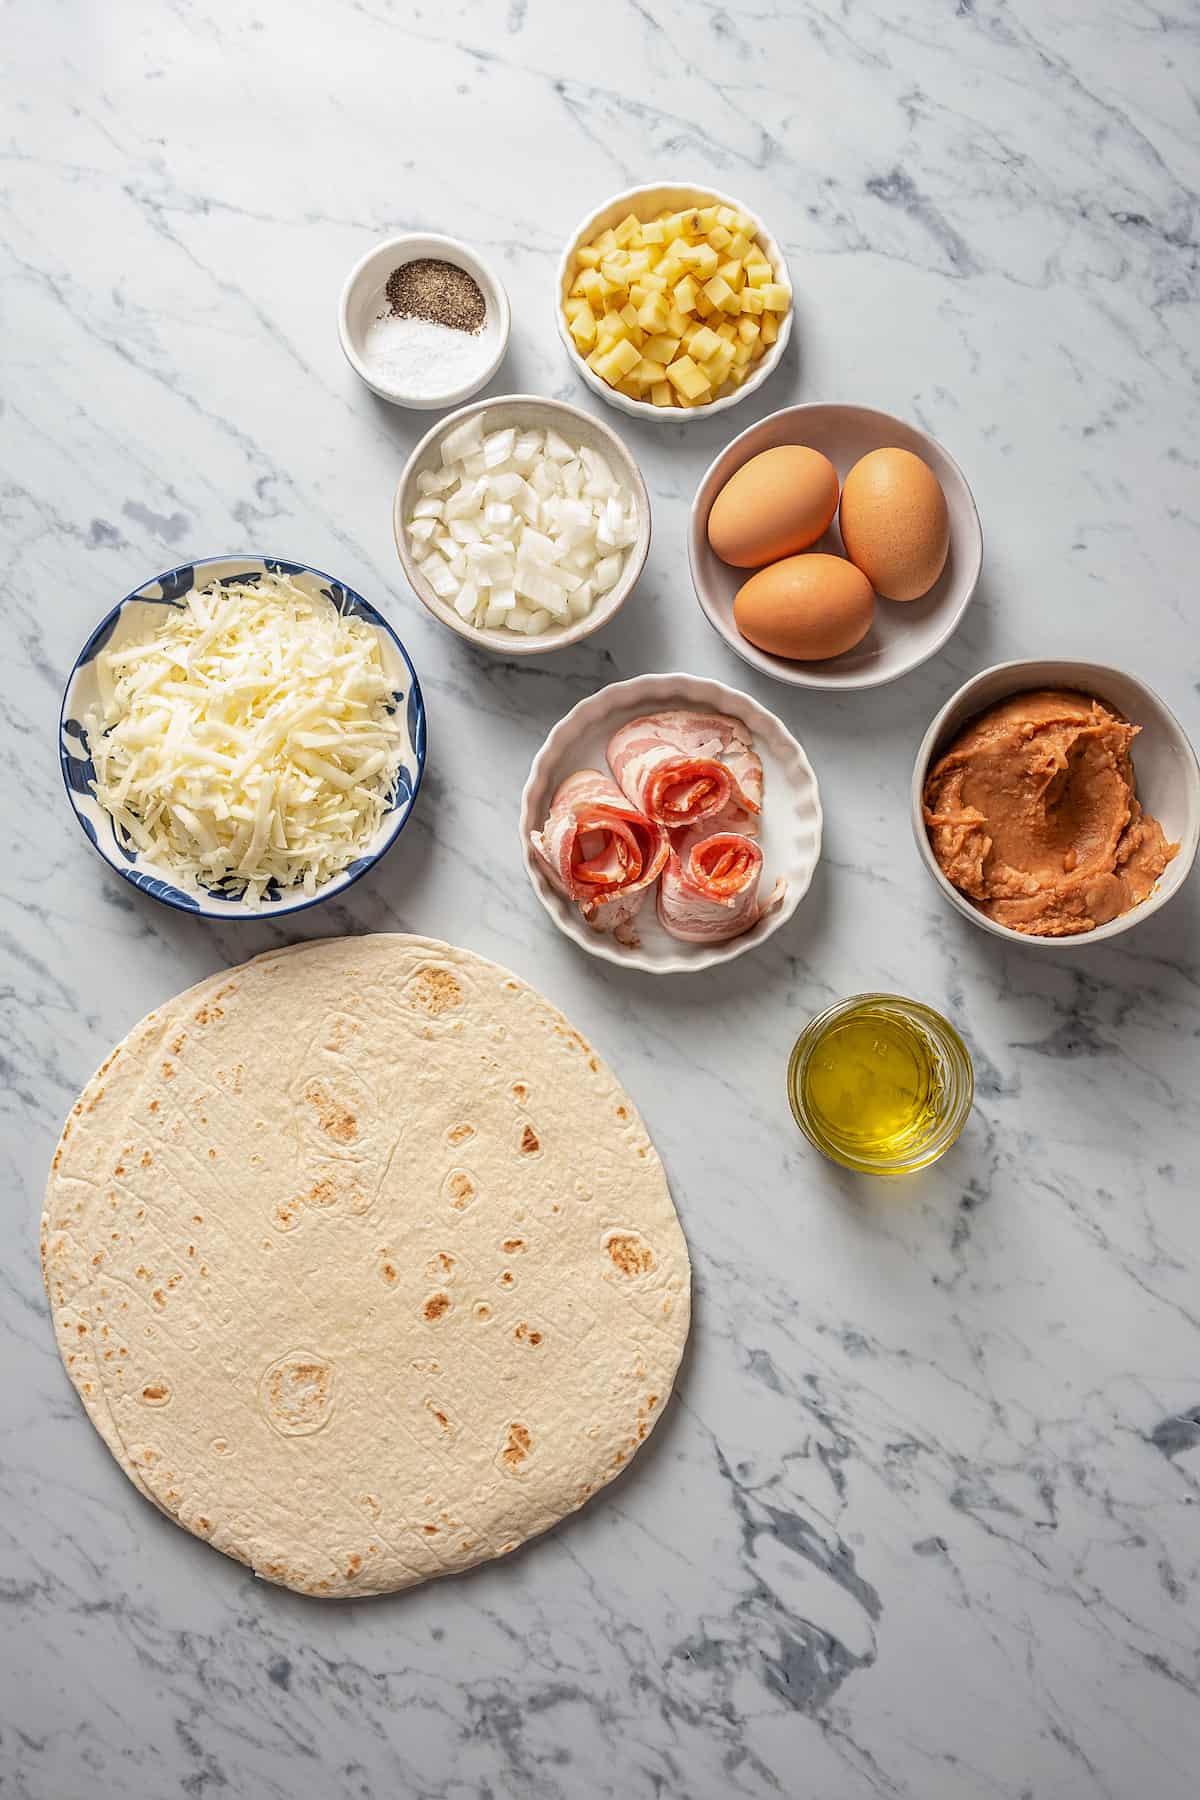 Ingredients for easy breakfast quesadillas.